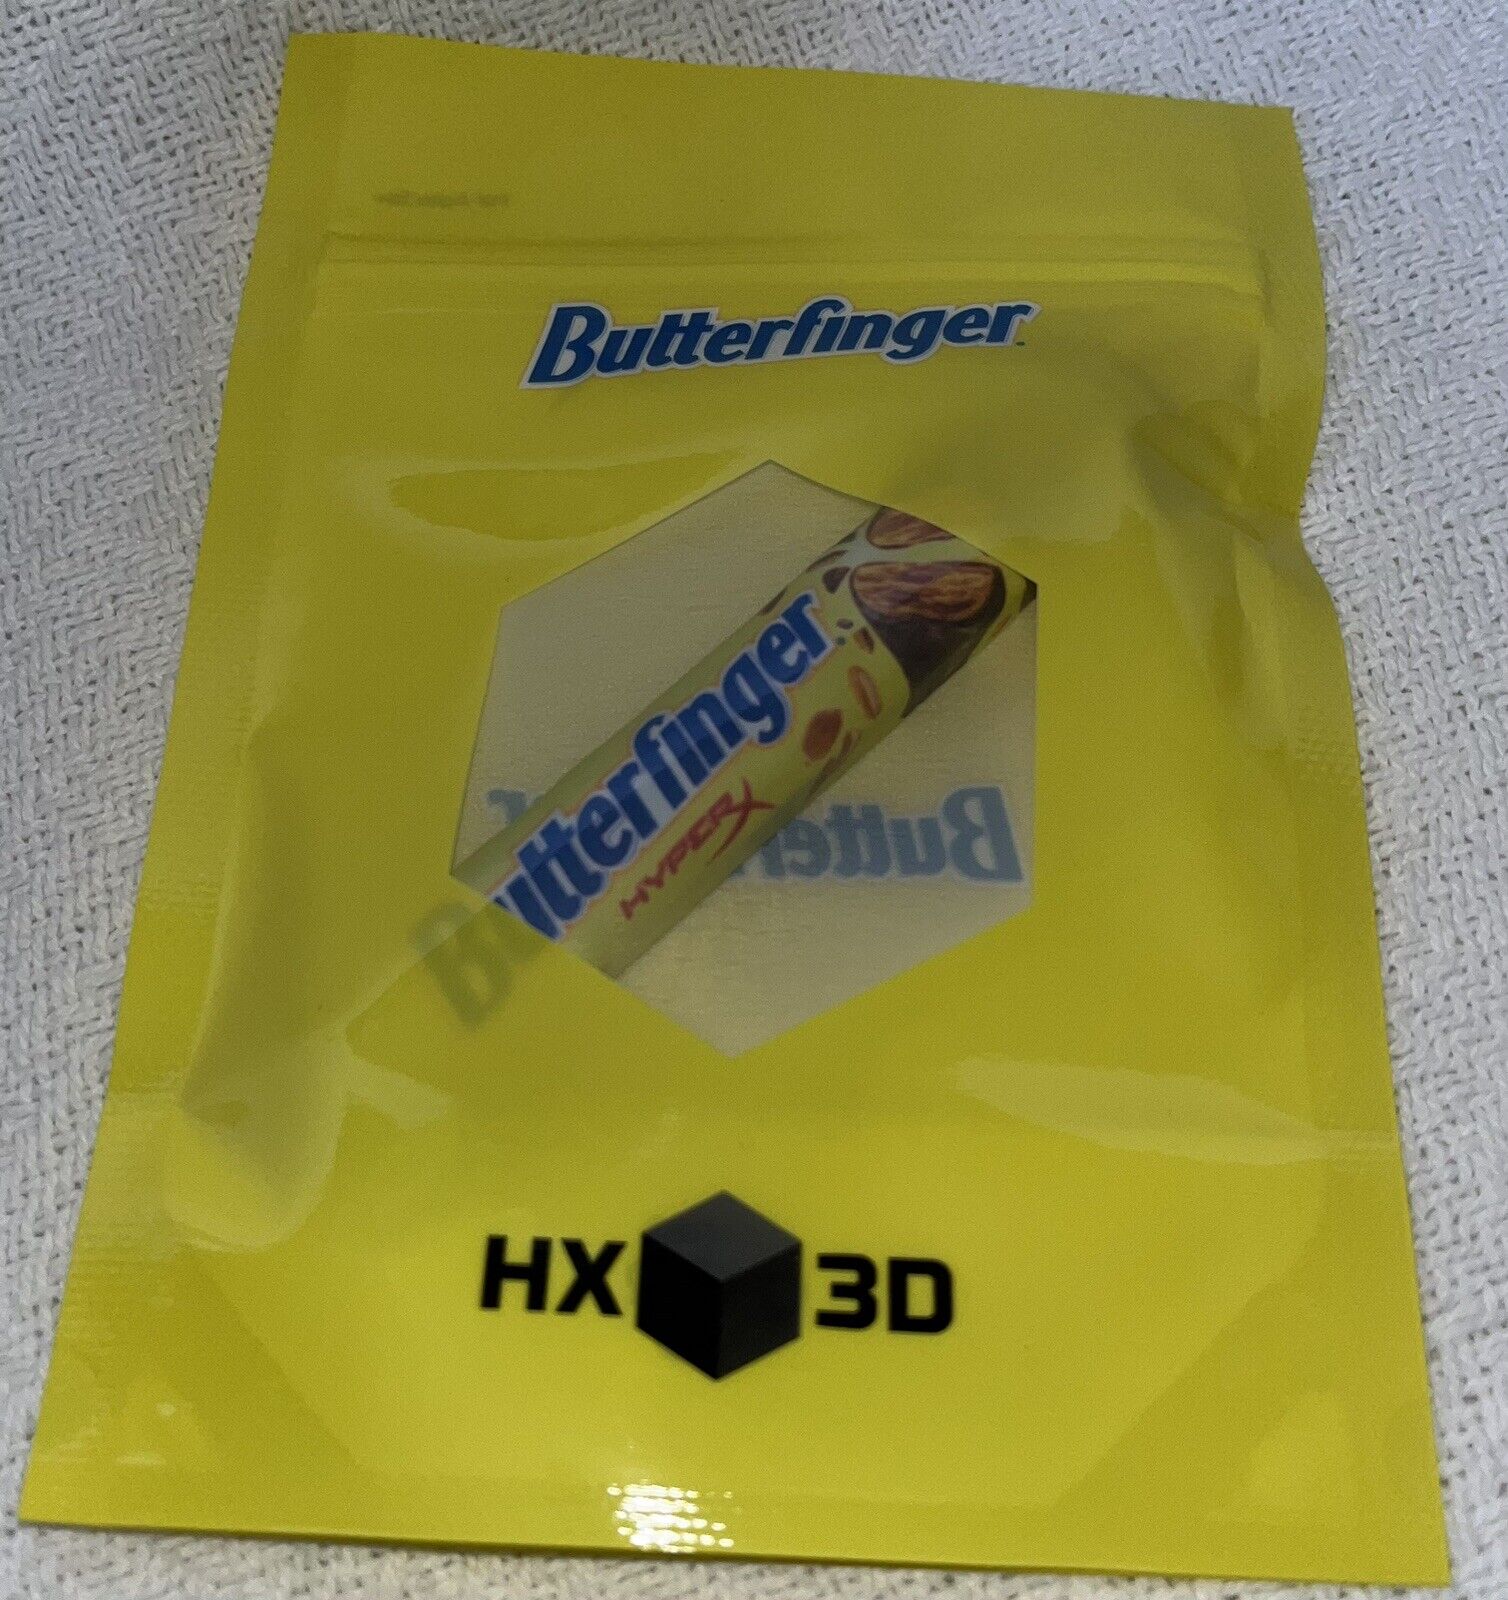 Hyperx Butterfinger gaming spacebar key cap HX3D New